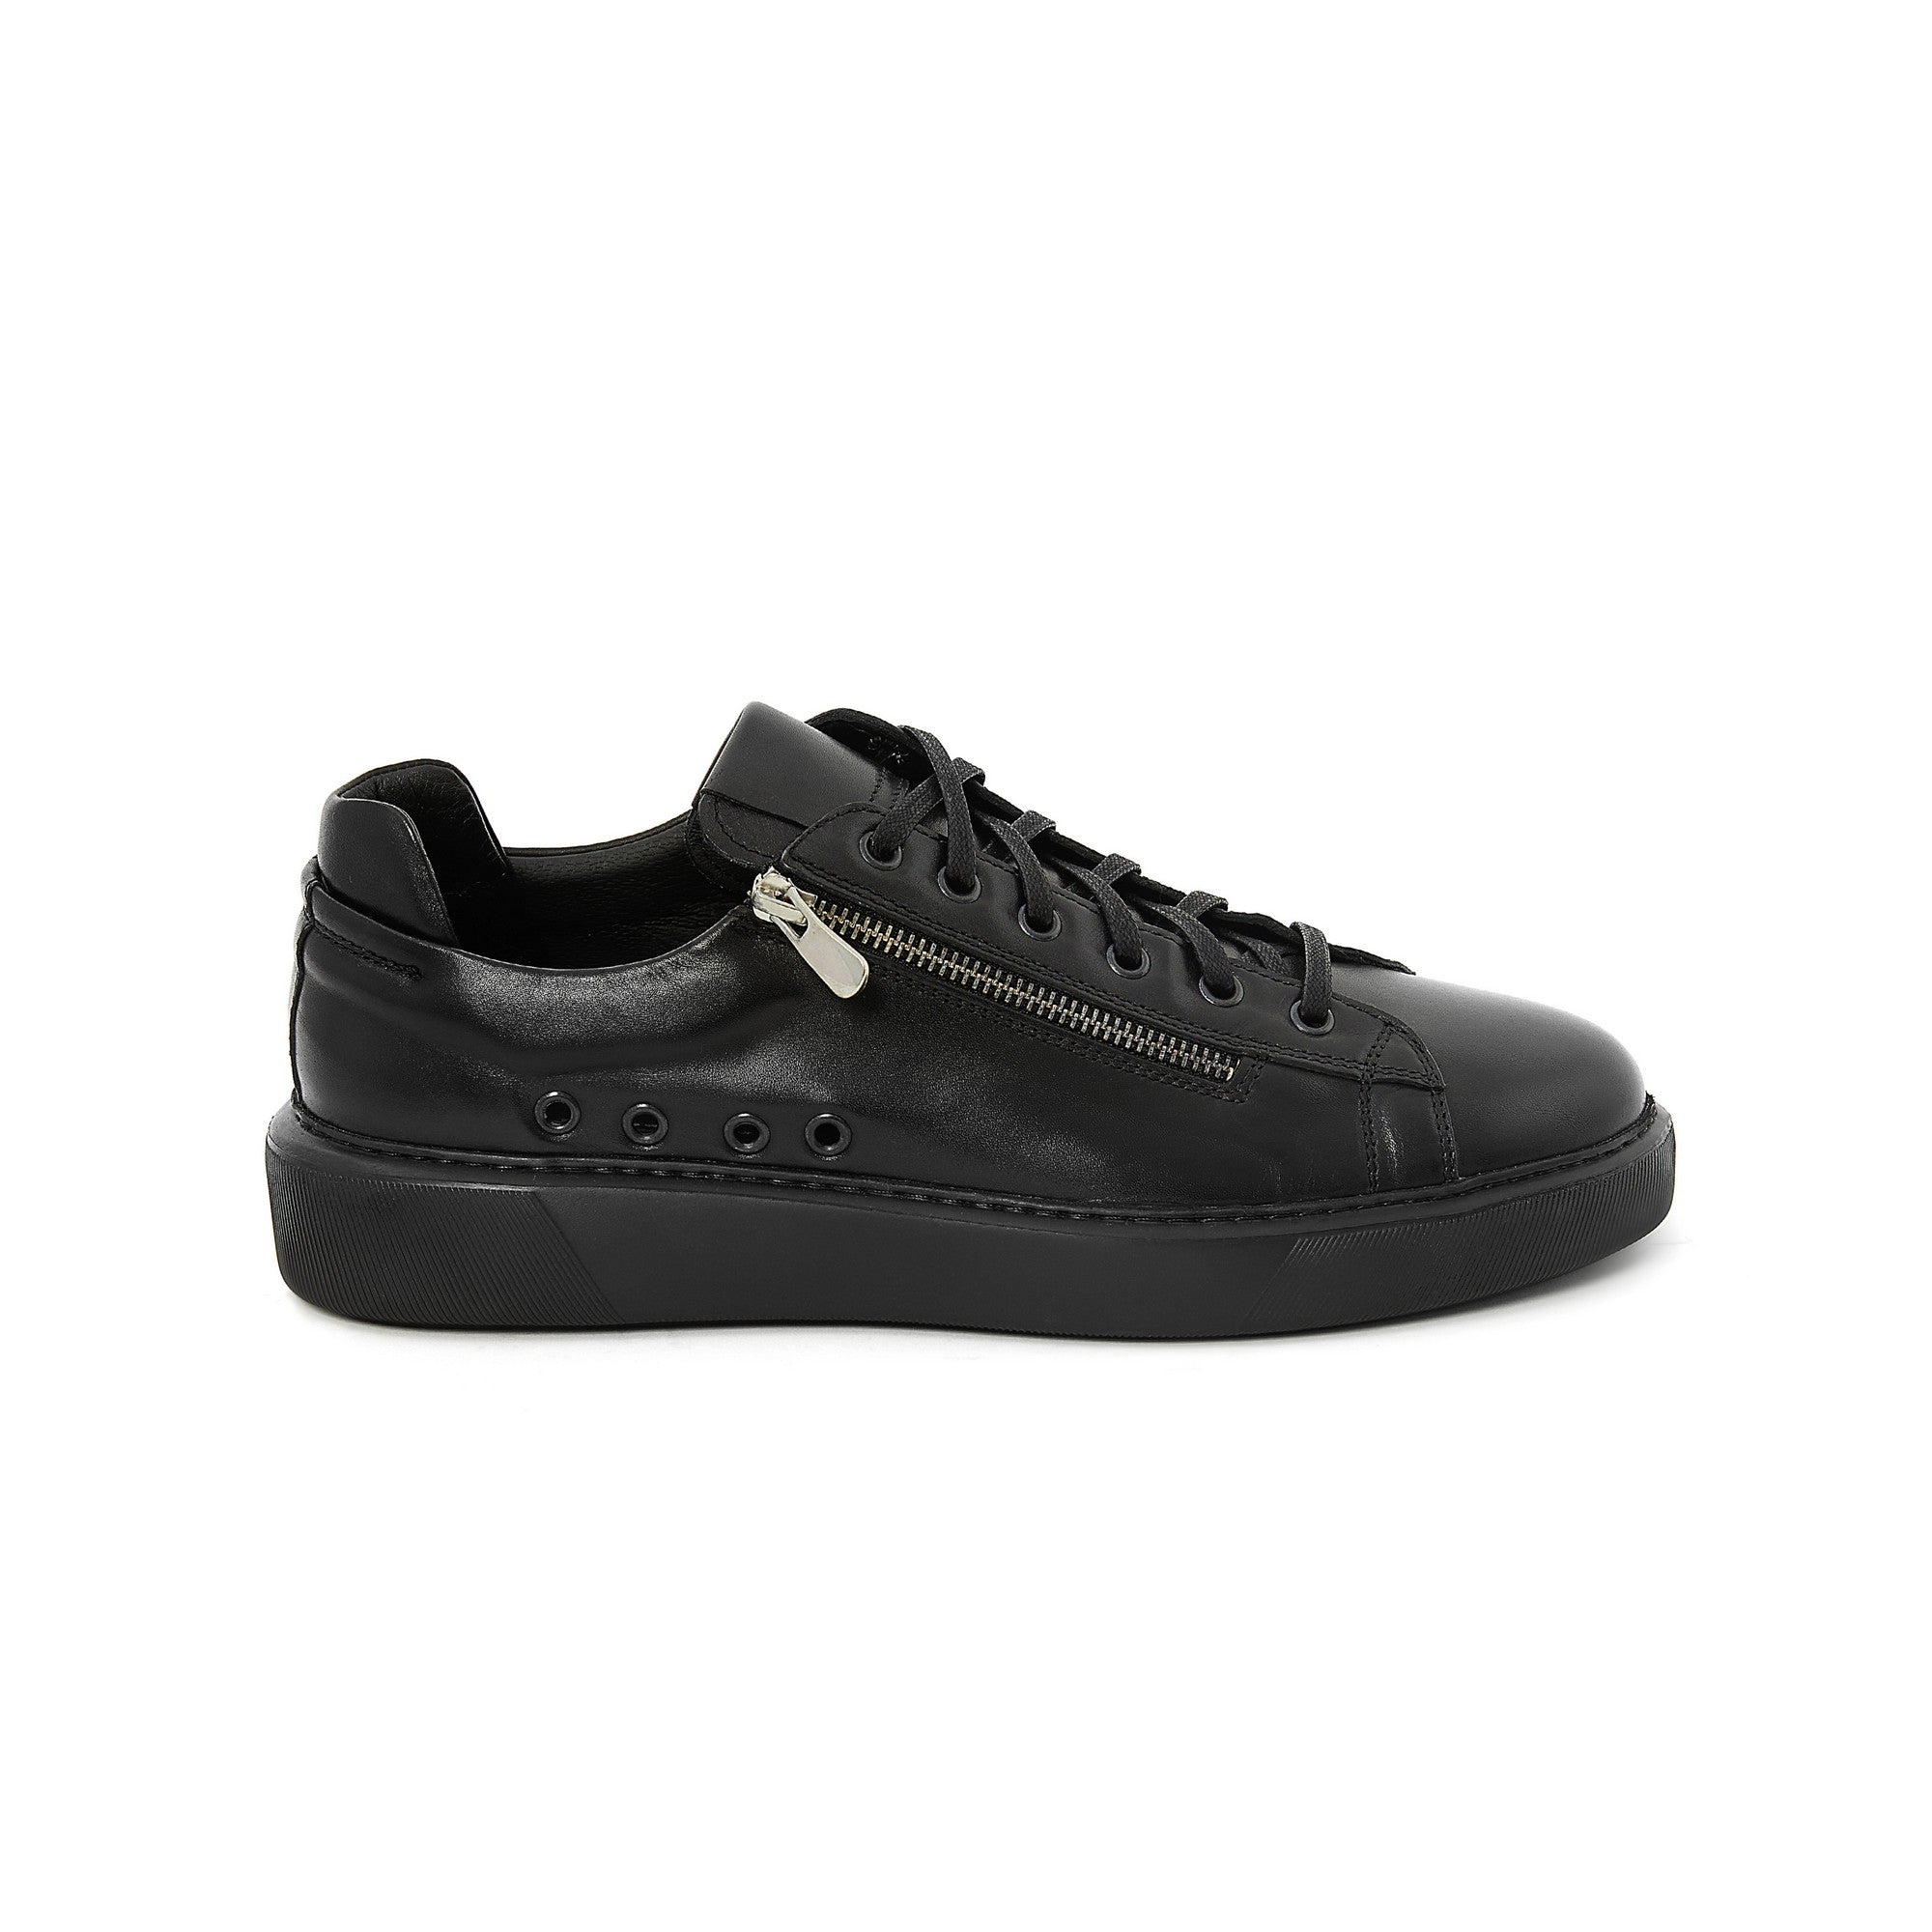 Men's Calf Leather Handmade Sneakers M8003